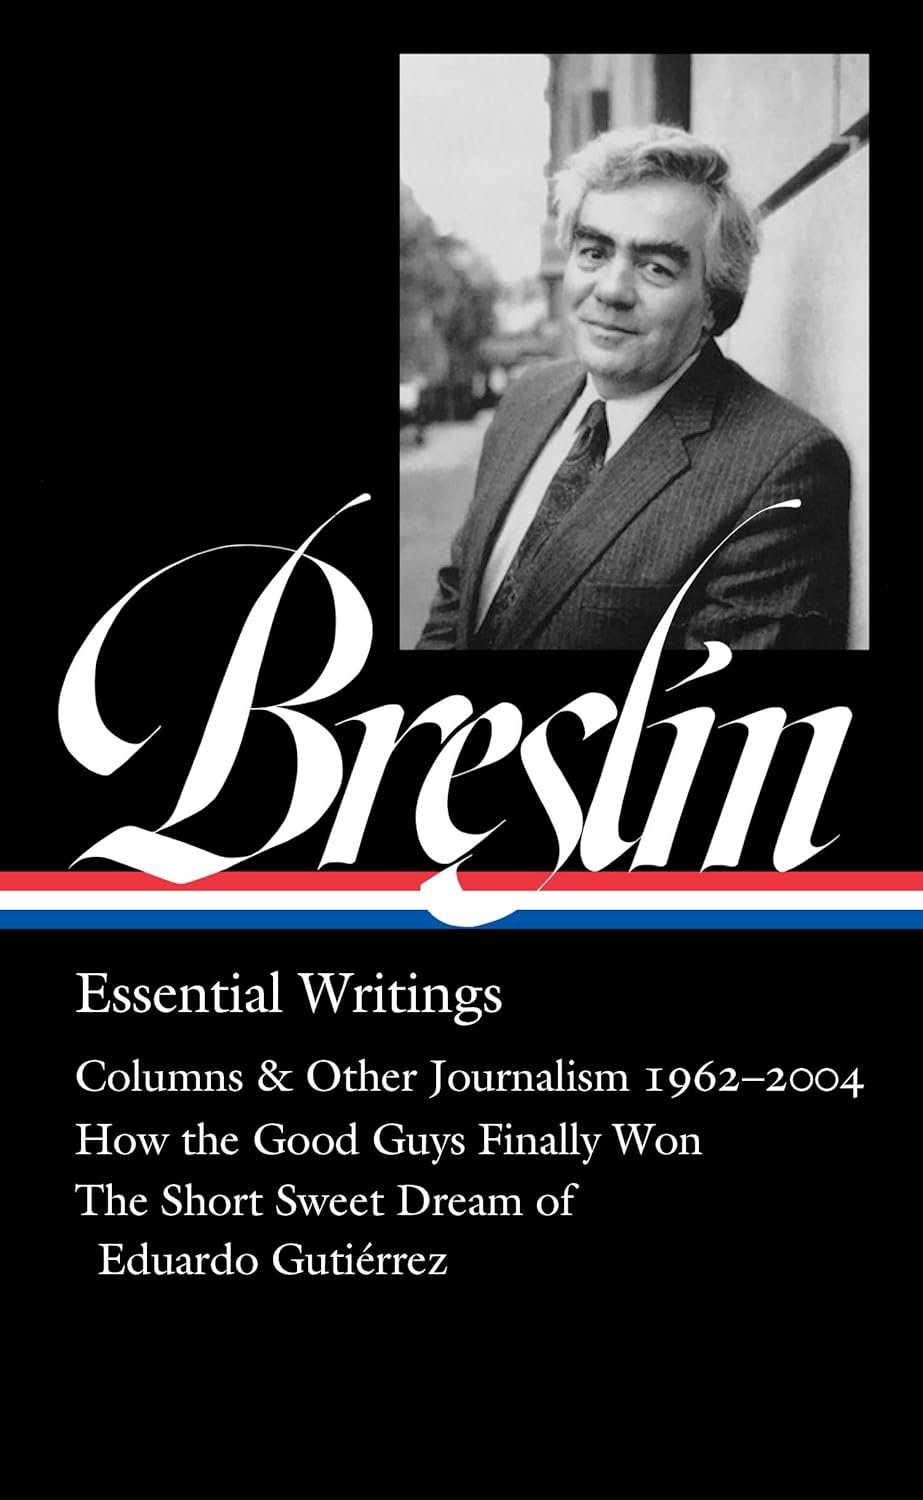 "Jimmy Breslin: Essential Writings" by Jimmy Breslin (WSJ)